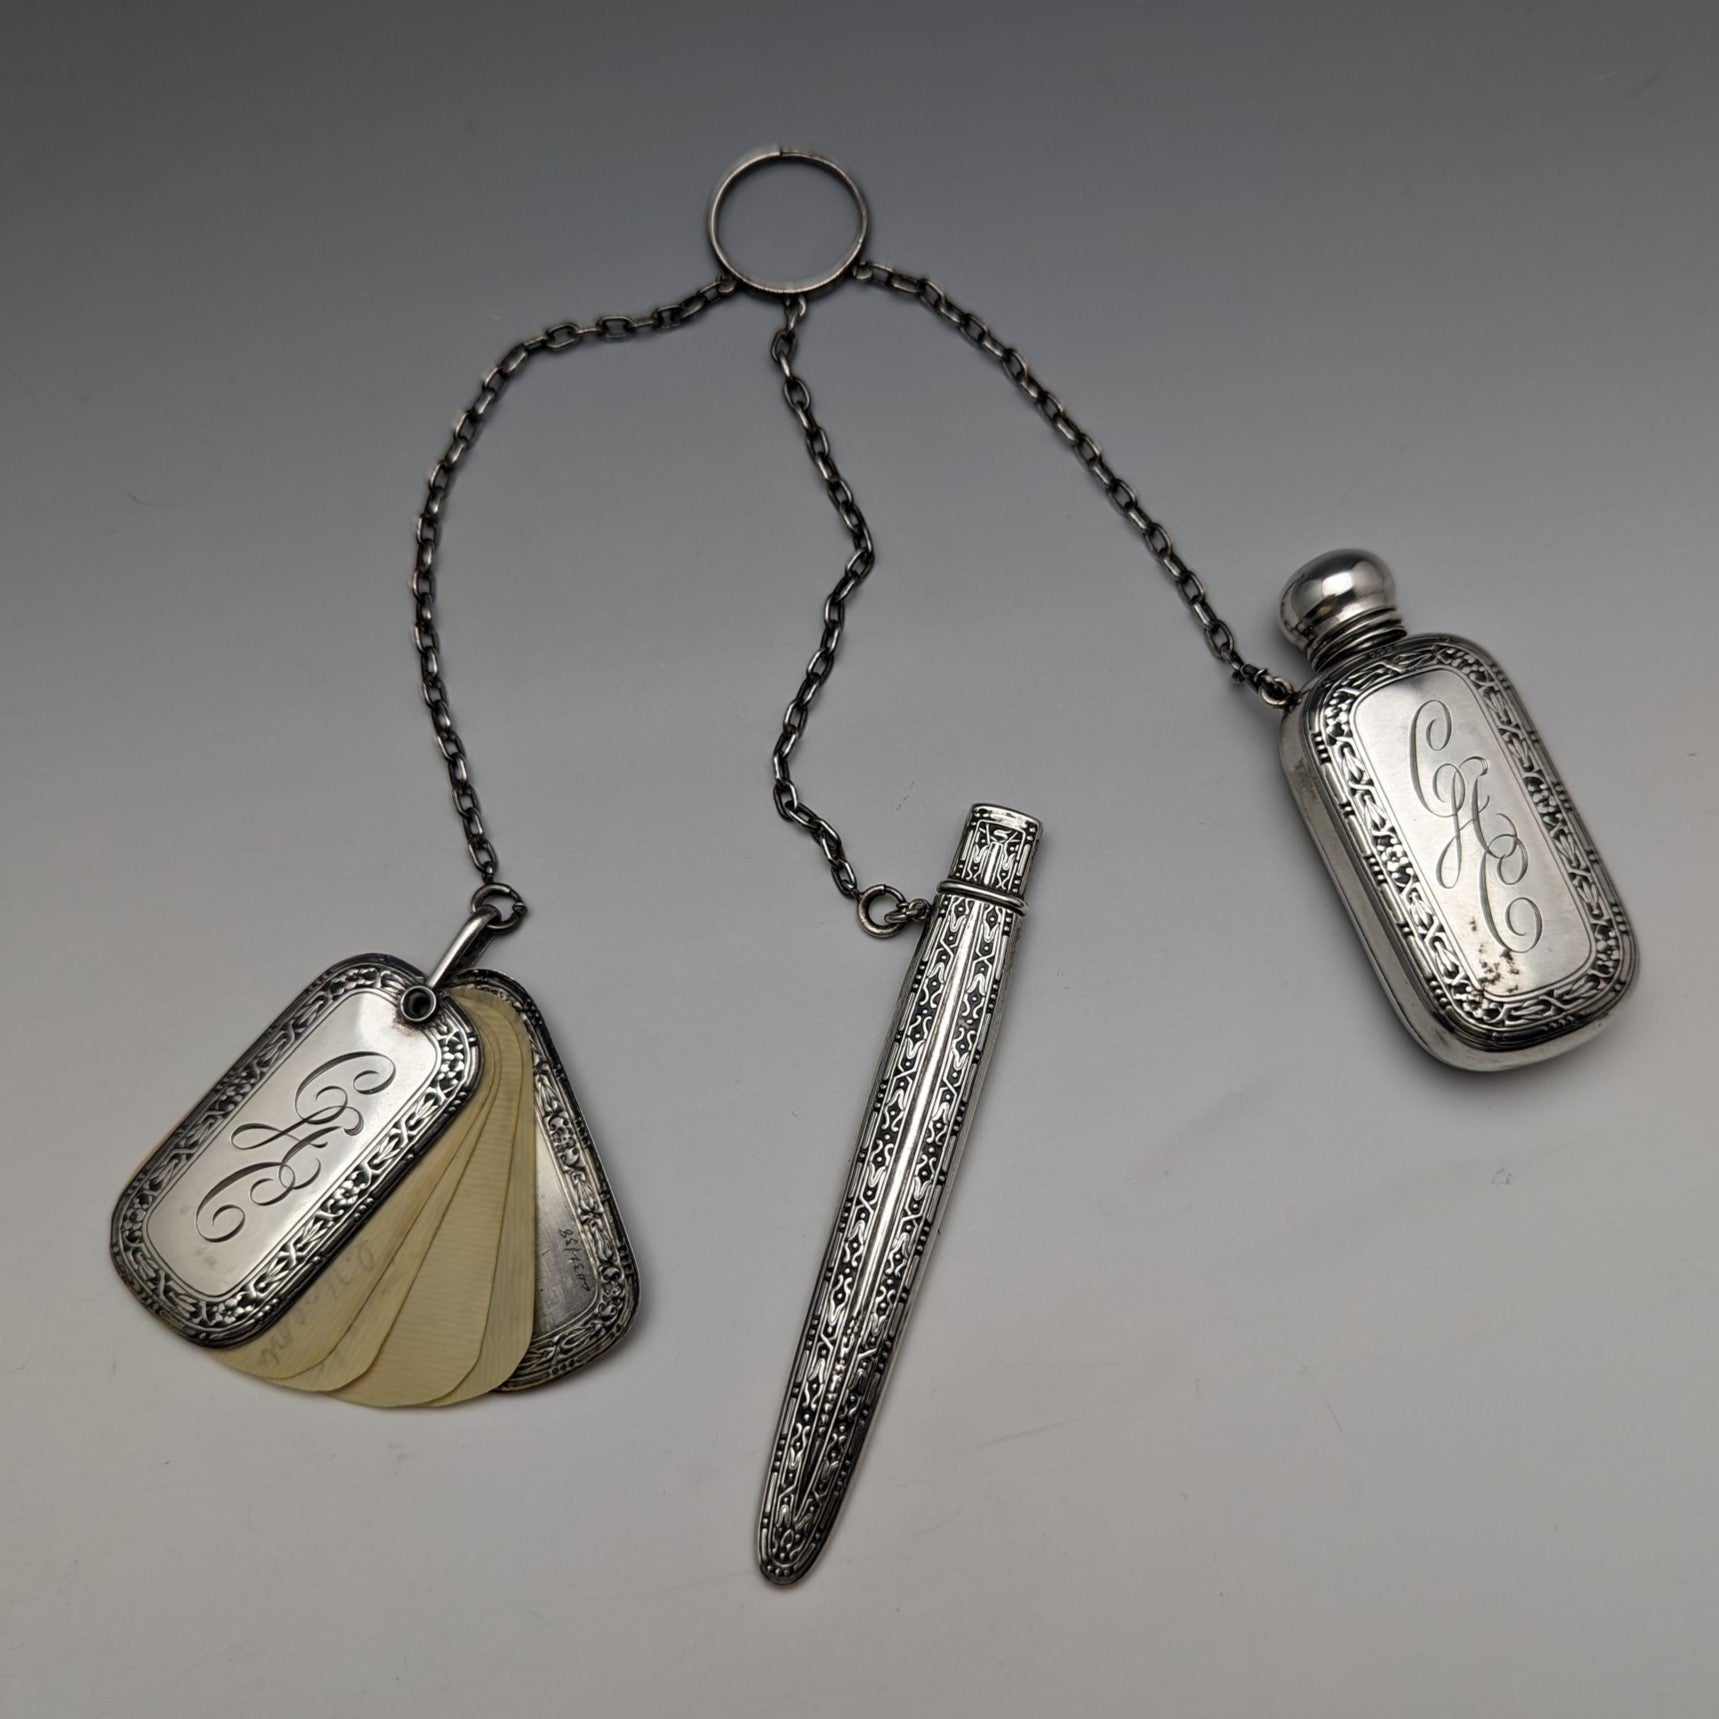 目立った傷や汚れのない美品機能19世紀後半 米国アンティーク 純銀製シャトレーン ボトル、メモ、ペンシル